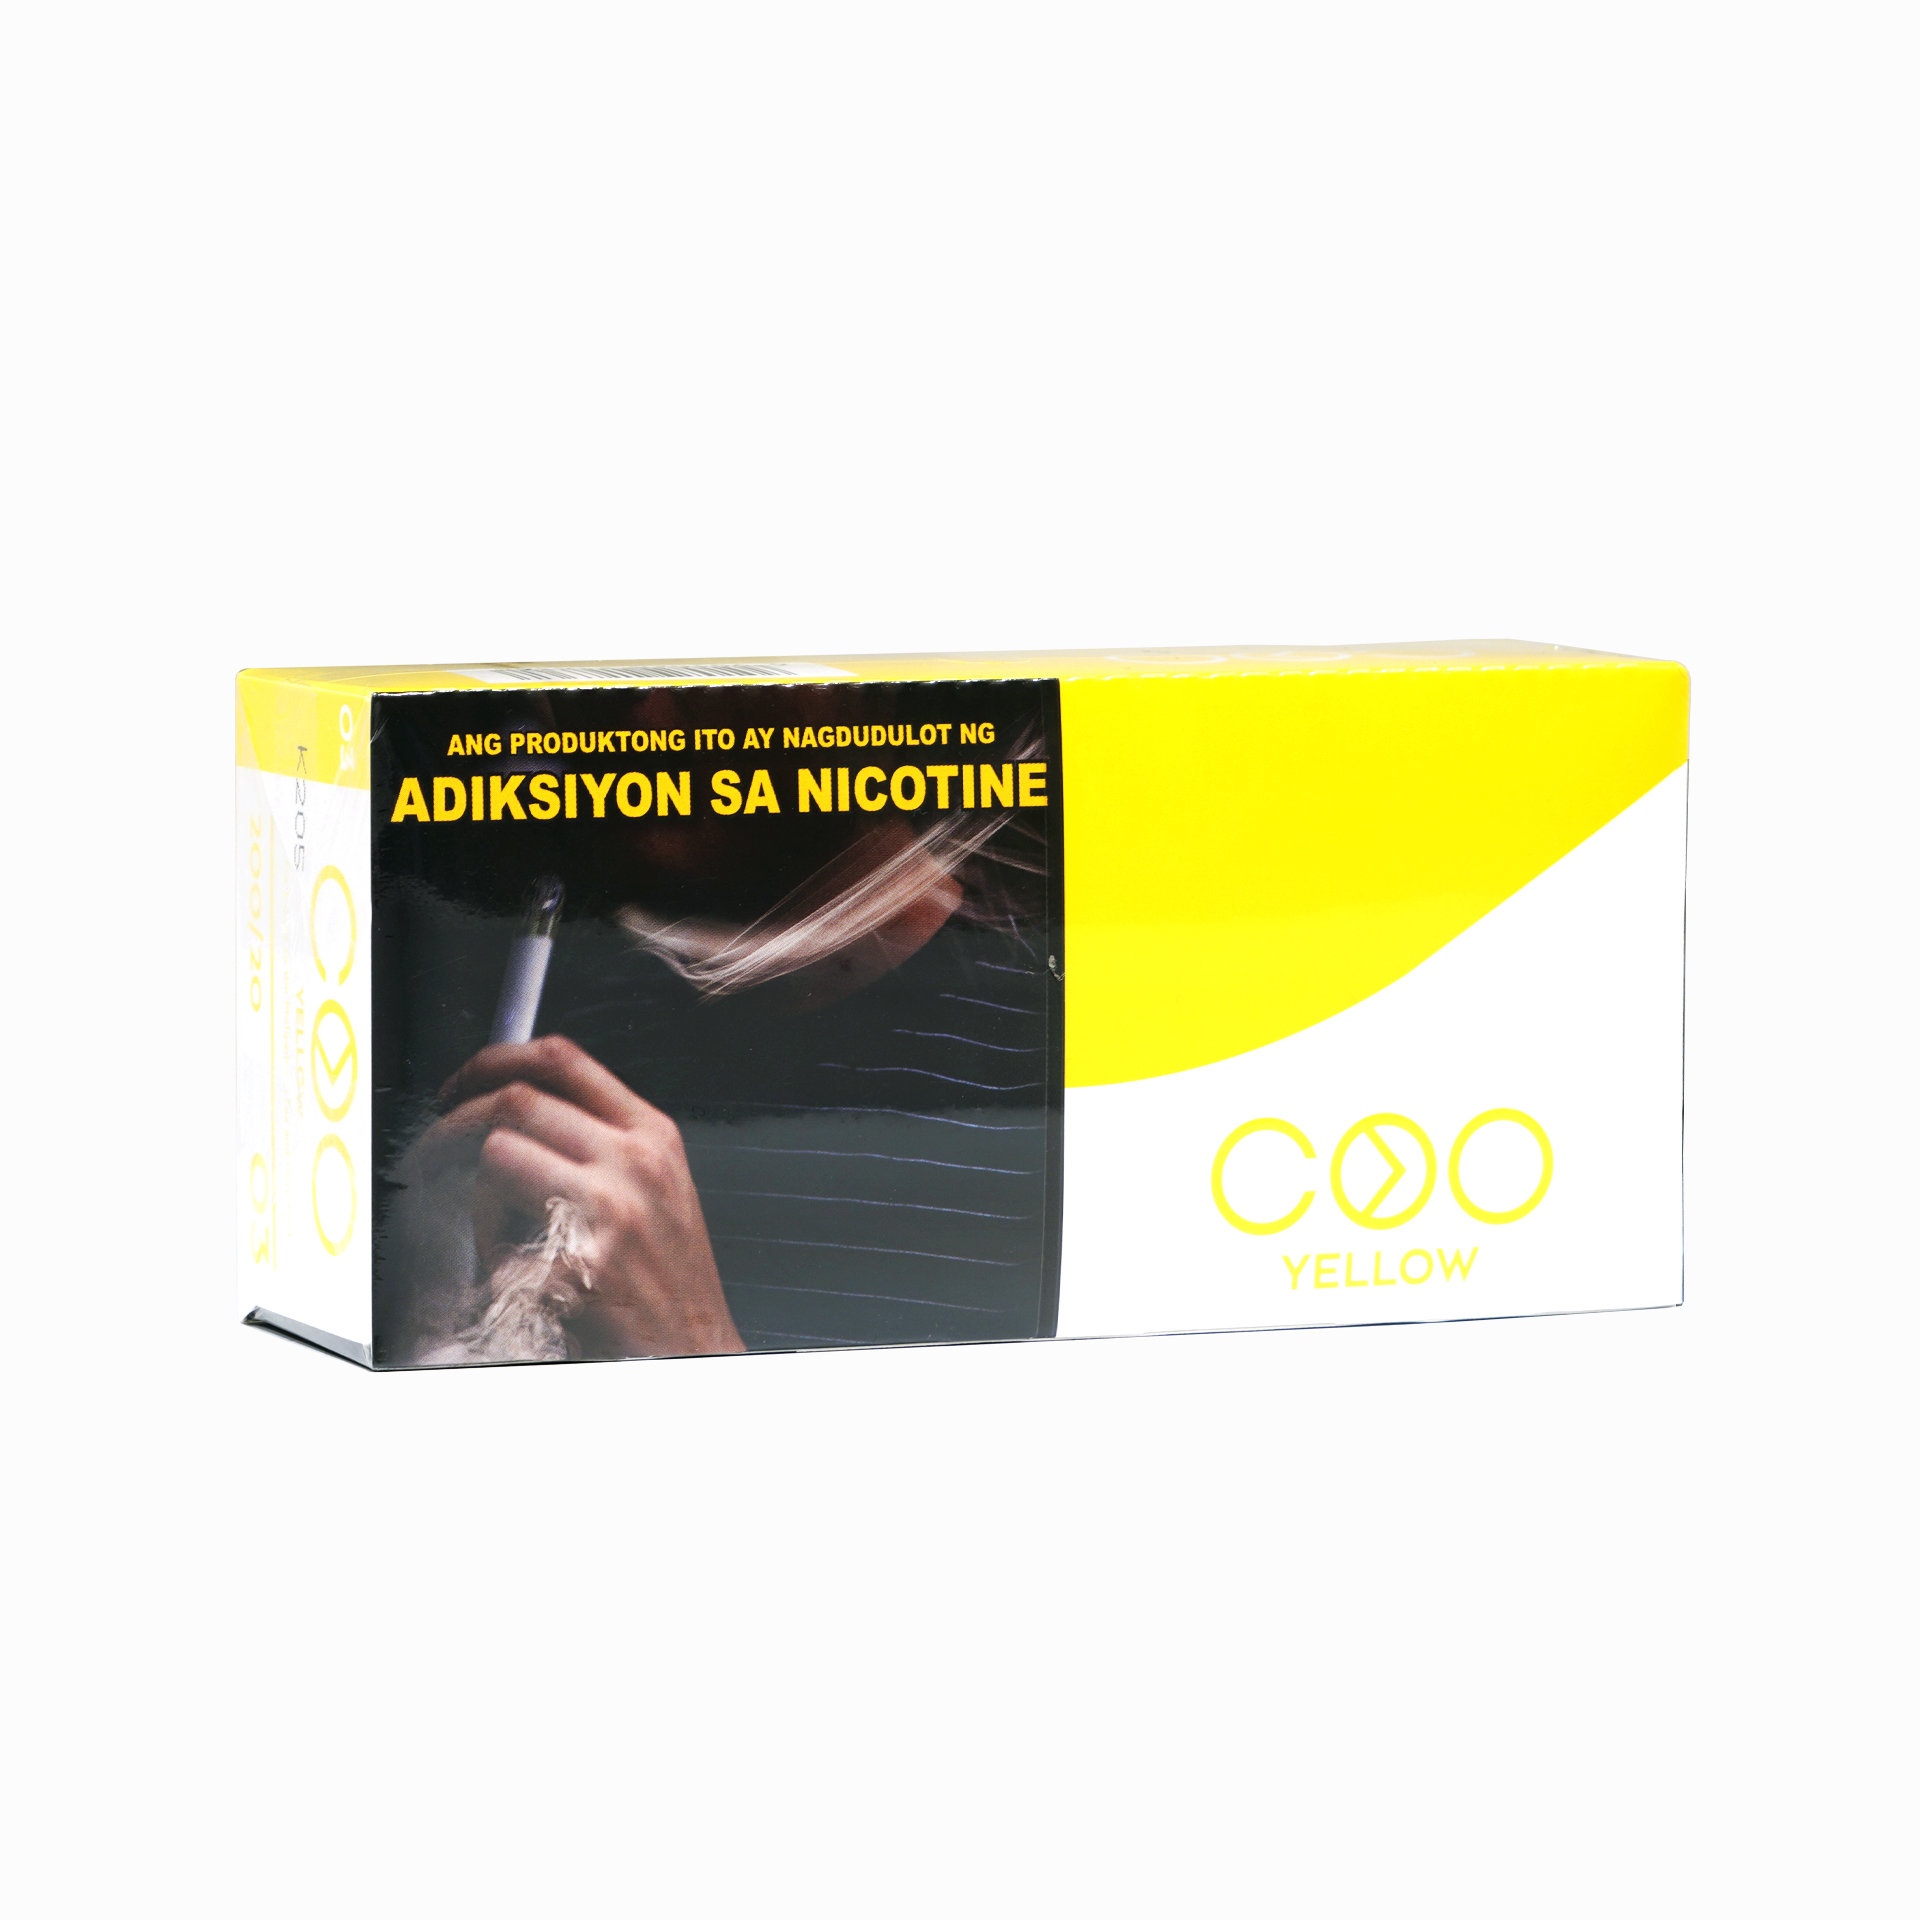 MOK COO Yellow Heat-Not-Burn Sticks (1 ream, 10 packs)